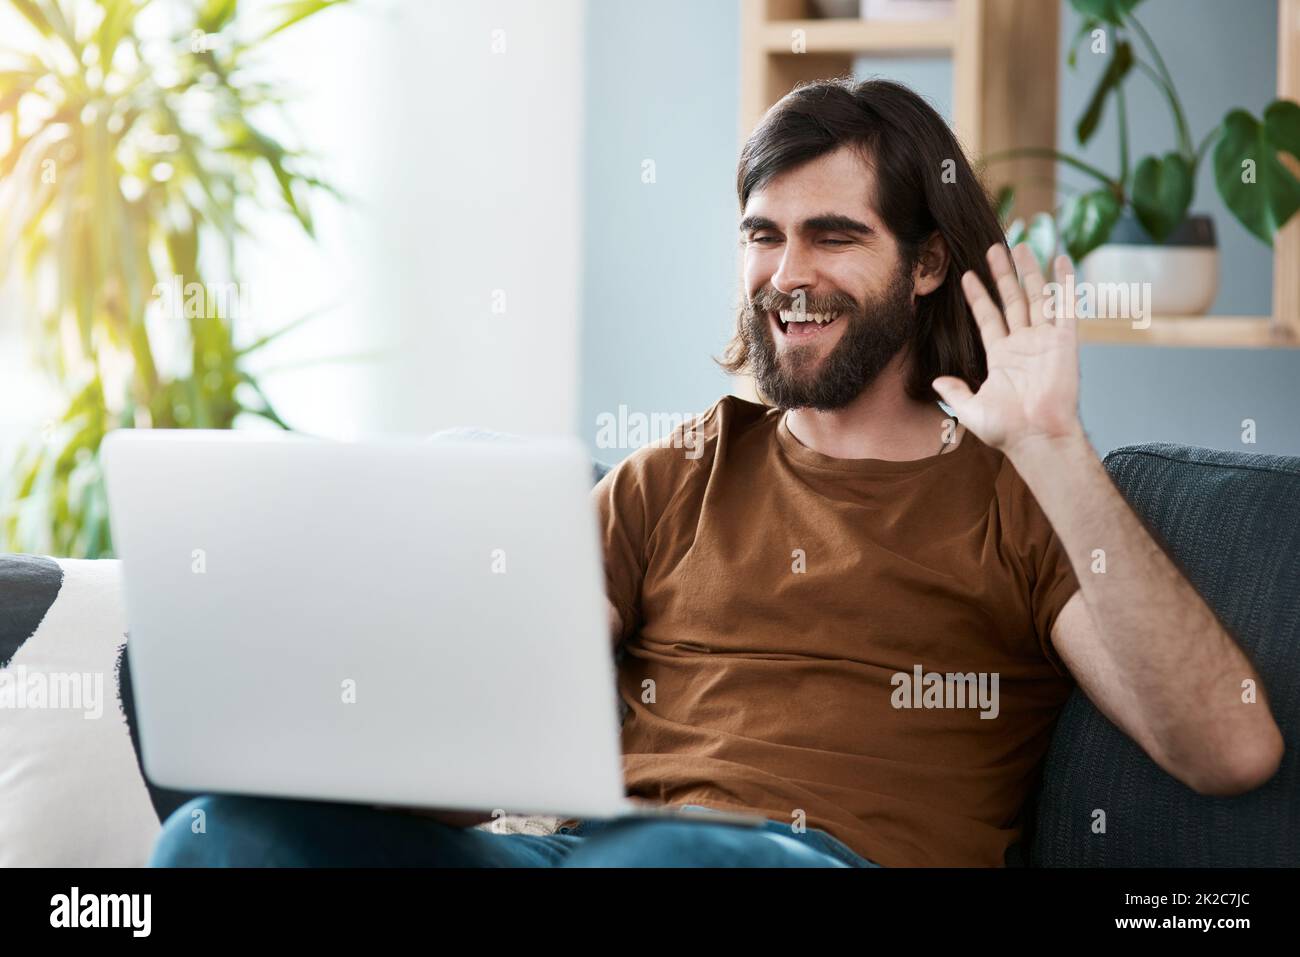 Bonjour de l'autre côté. Photo d'un beau jeune homme utilisant son ordinateur portable tout en se relaxant sur un canapé dans son salon. Banque D'Images